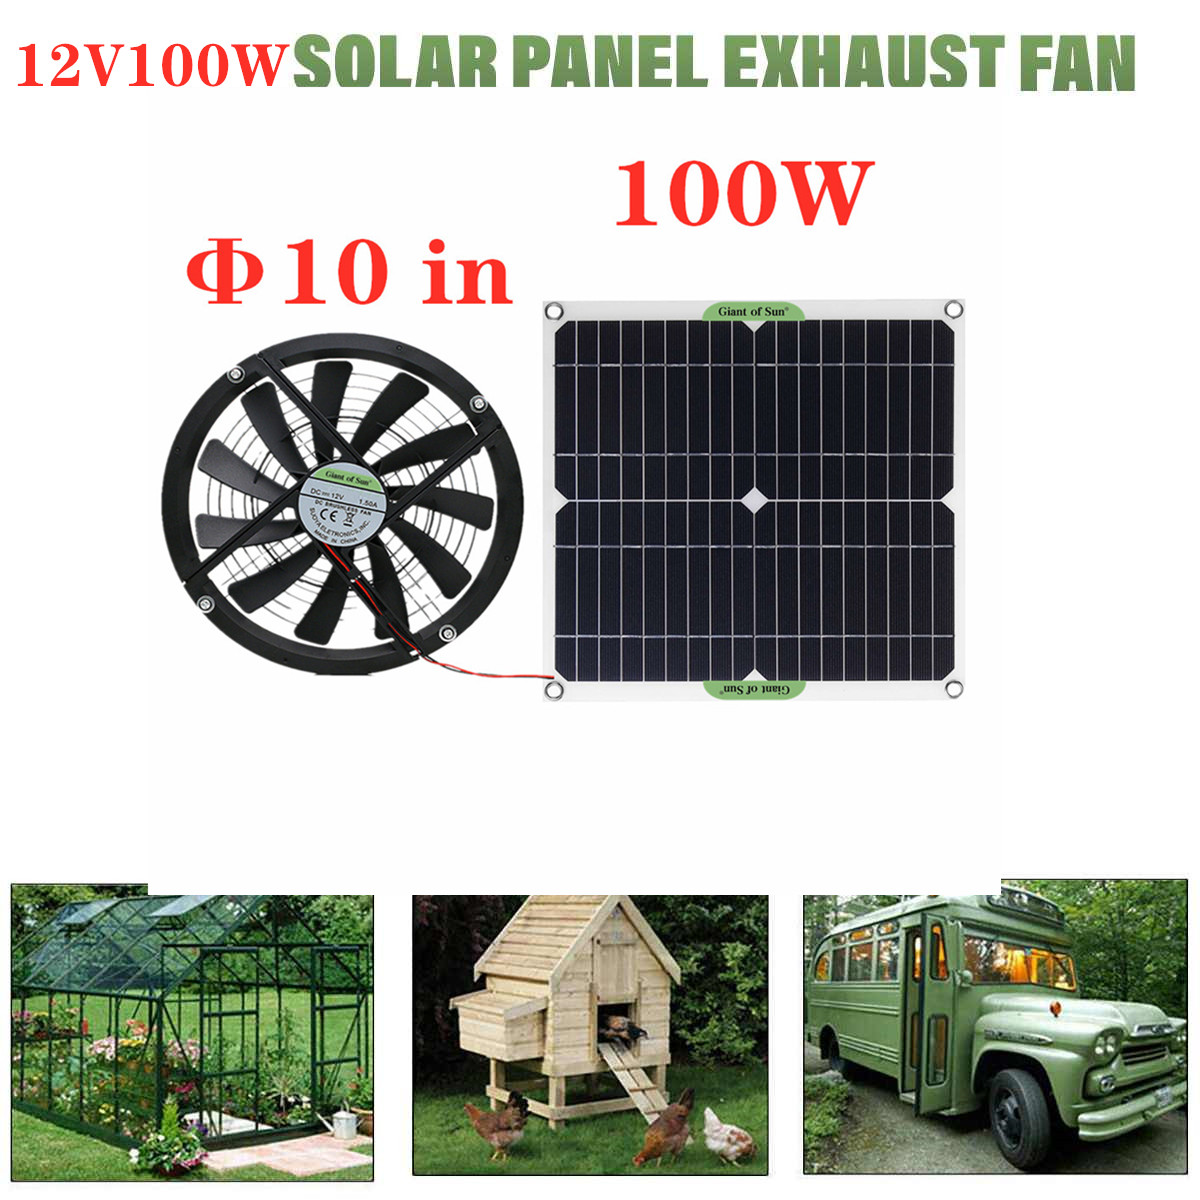 100W-Monocrystalline-Solar-Panel-Exhaust-Fan-Pet-House-Toilet-Car-RV-Cooling-Exhaust-Fan-1858861-4